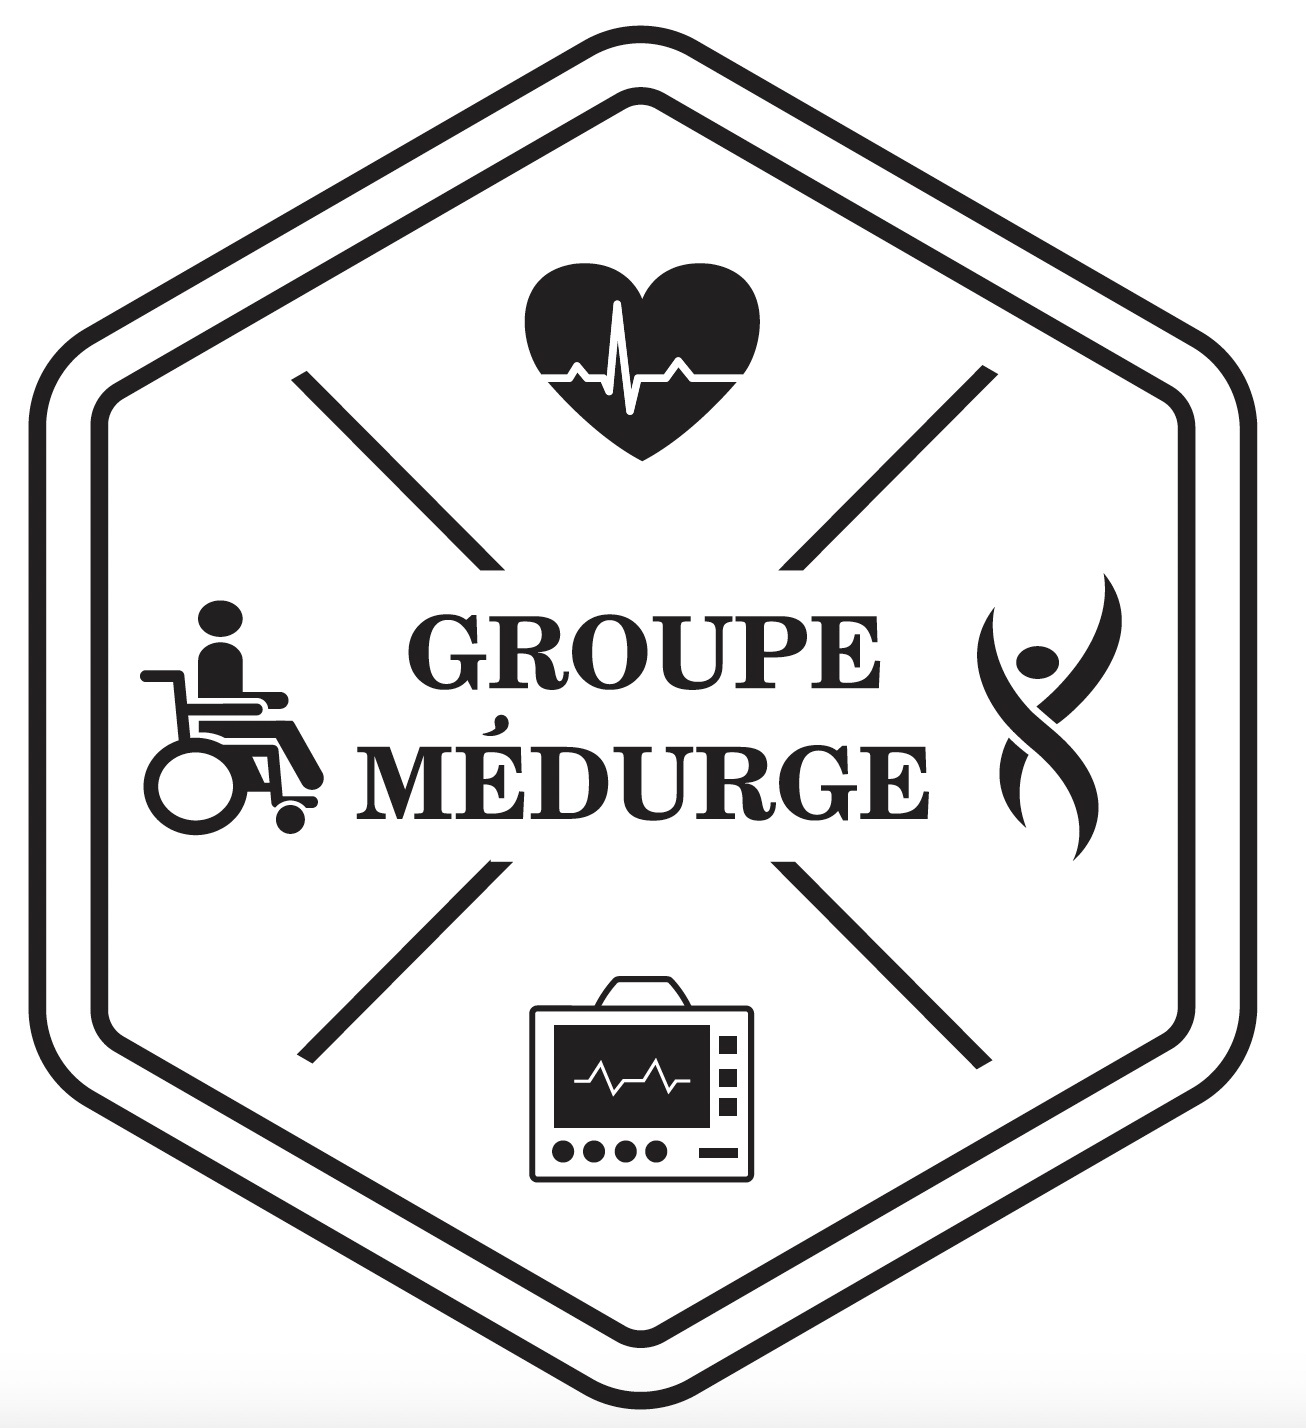 Groupe Medurge